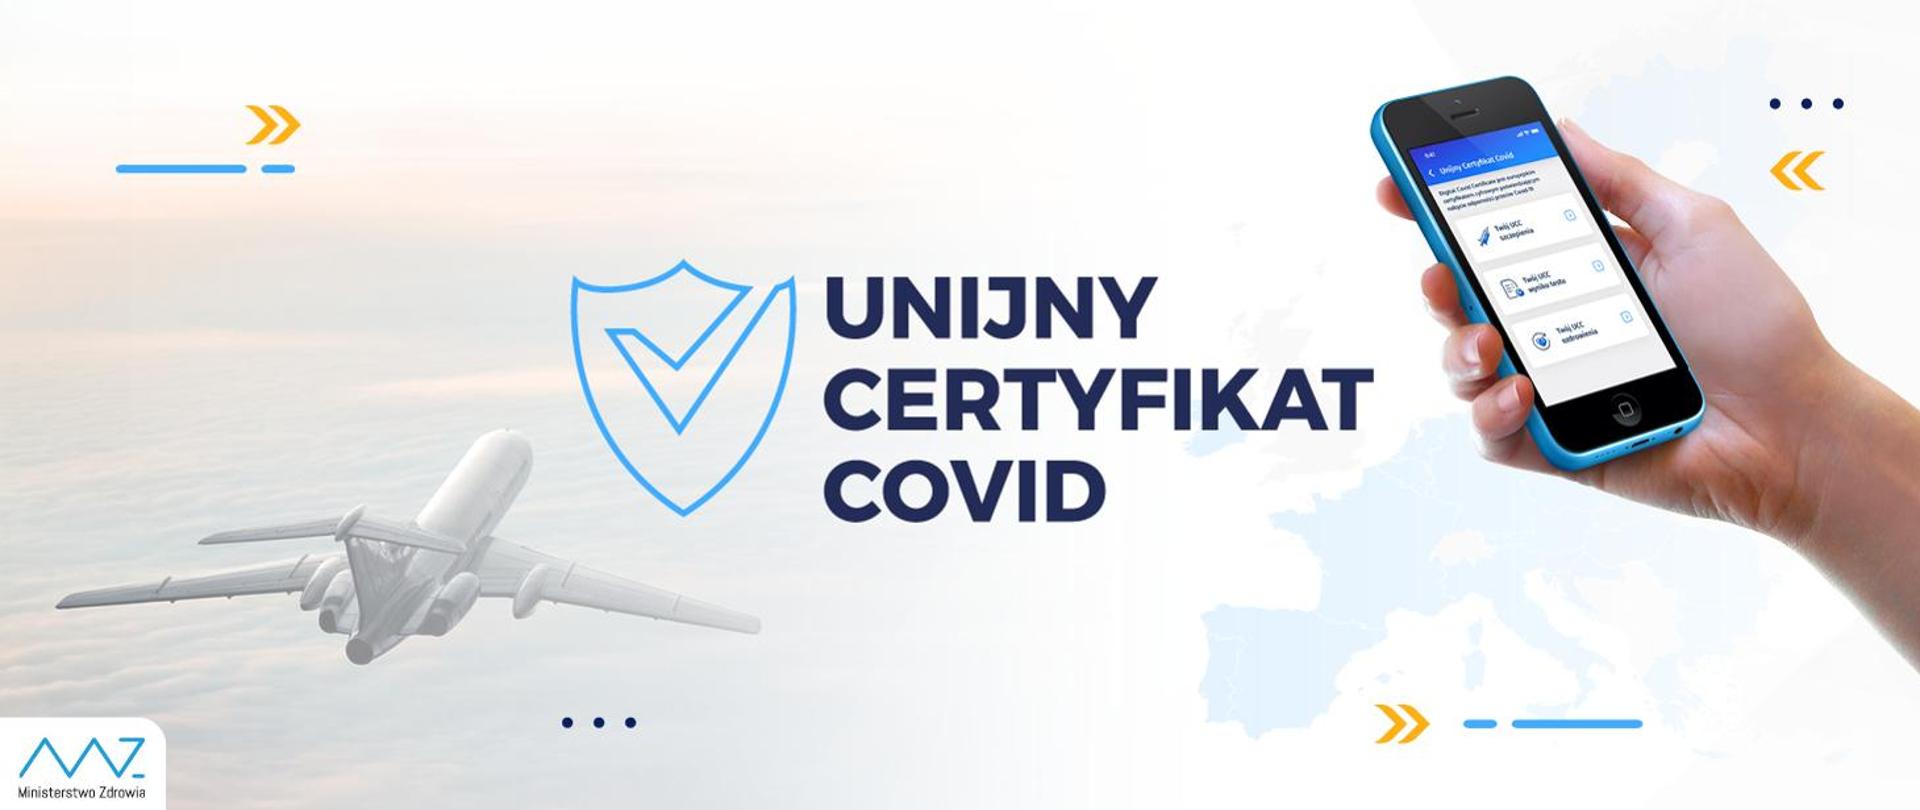 Unijny certyfikat COVID - na pierwszym planie telefon trzymany w dłoni na tle Europy. Na drugim planie lecący samolot pasażerski. 